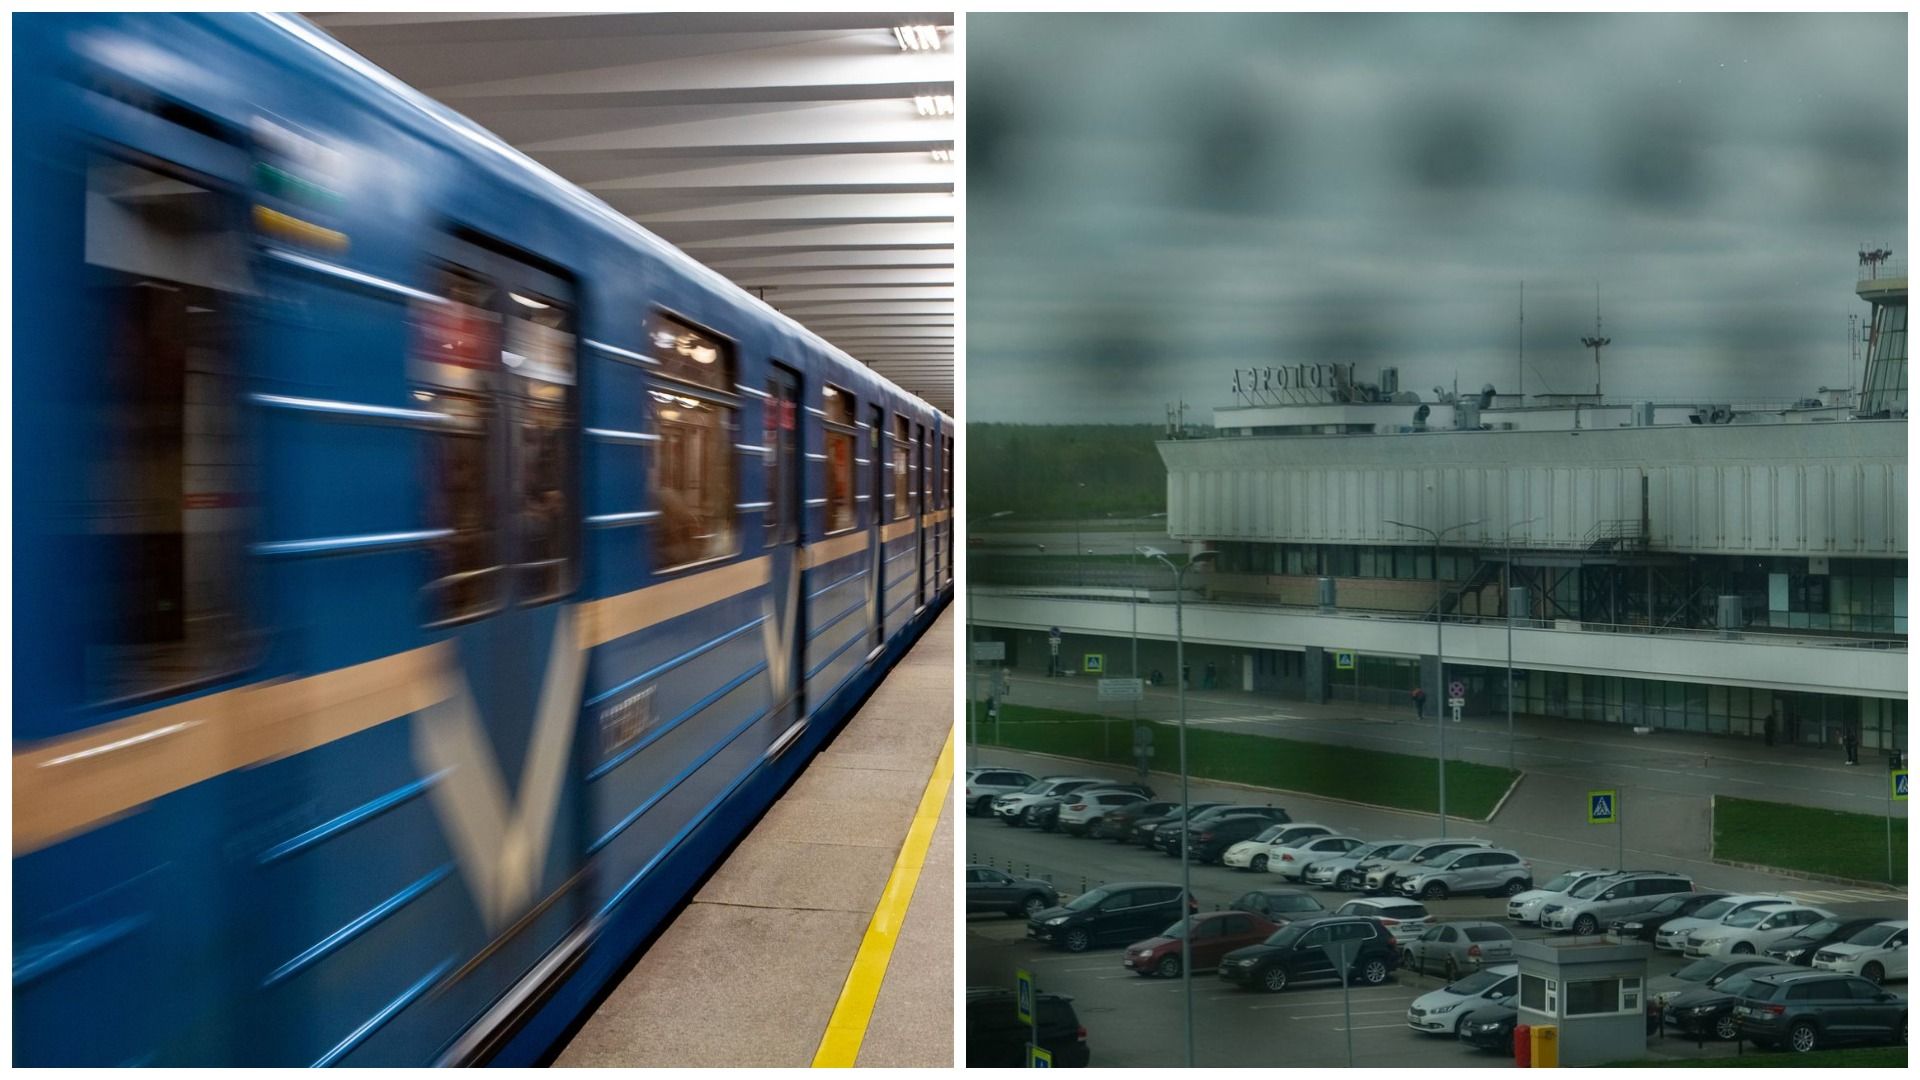 Решение об отмене разработки проекта по продлению метро до Пулково стало темой дня в Петербурге